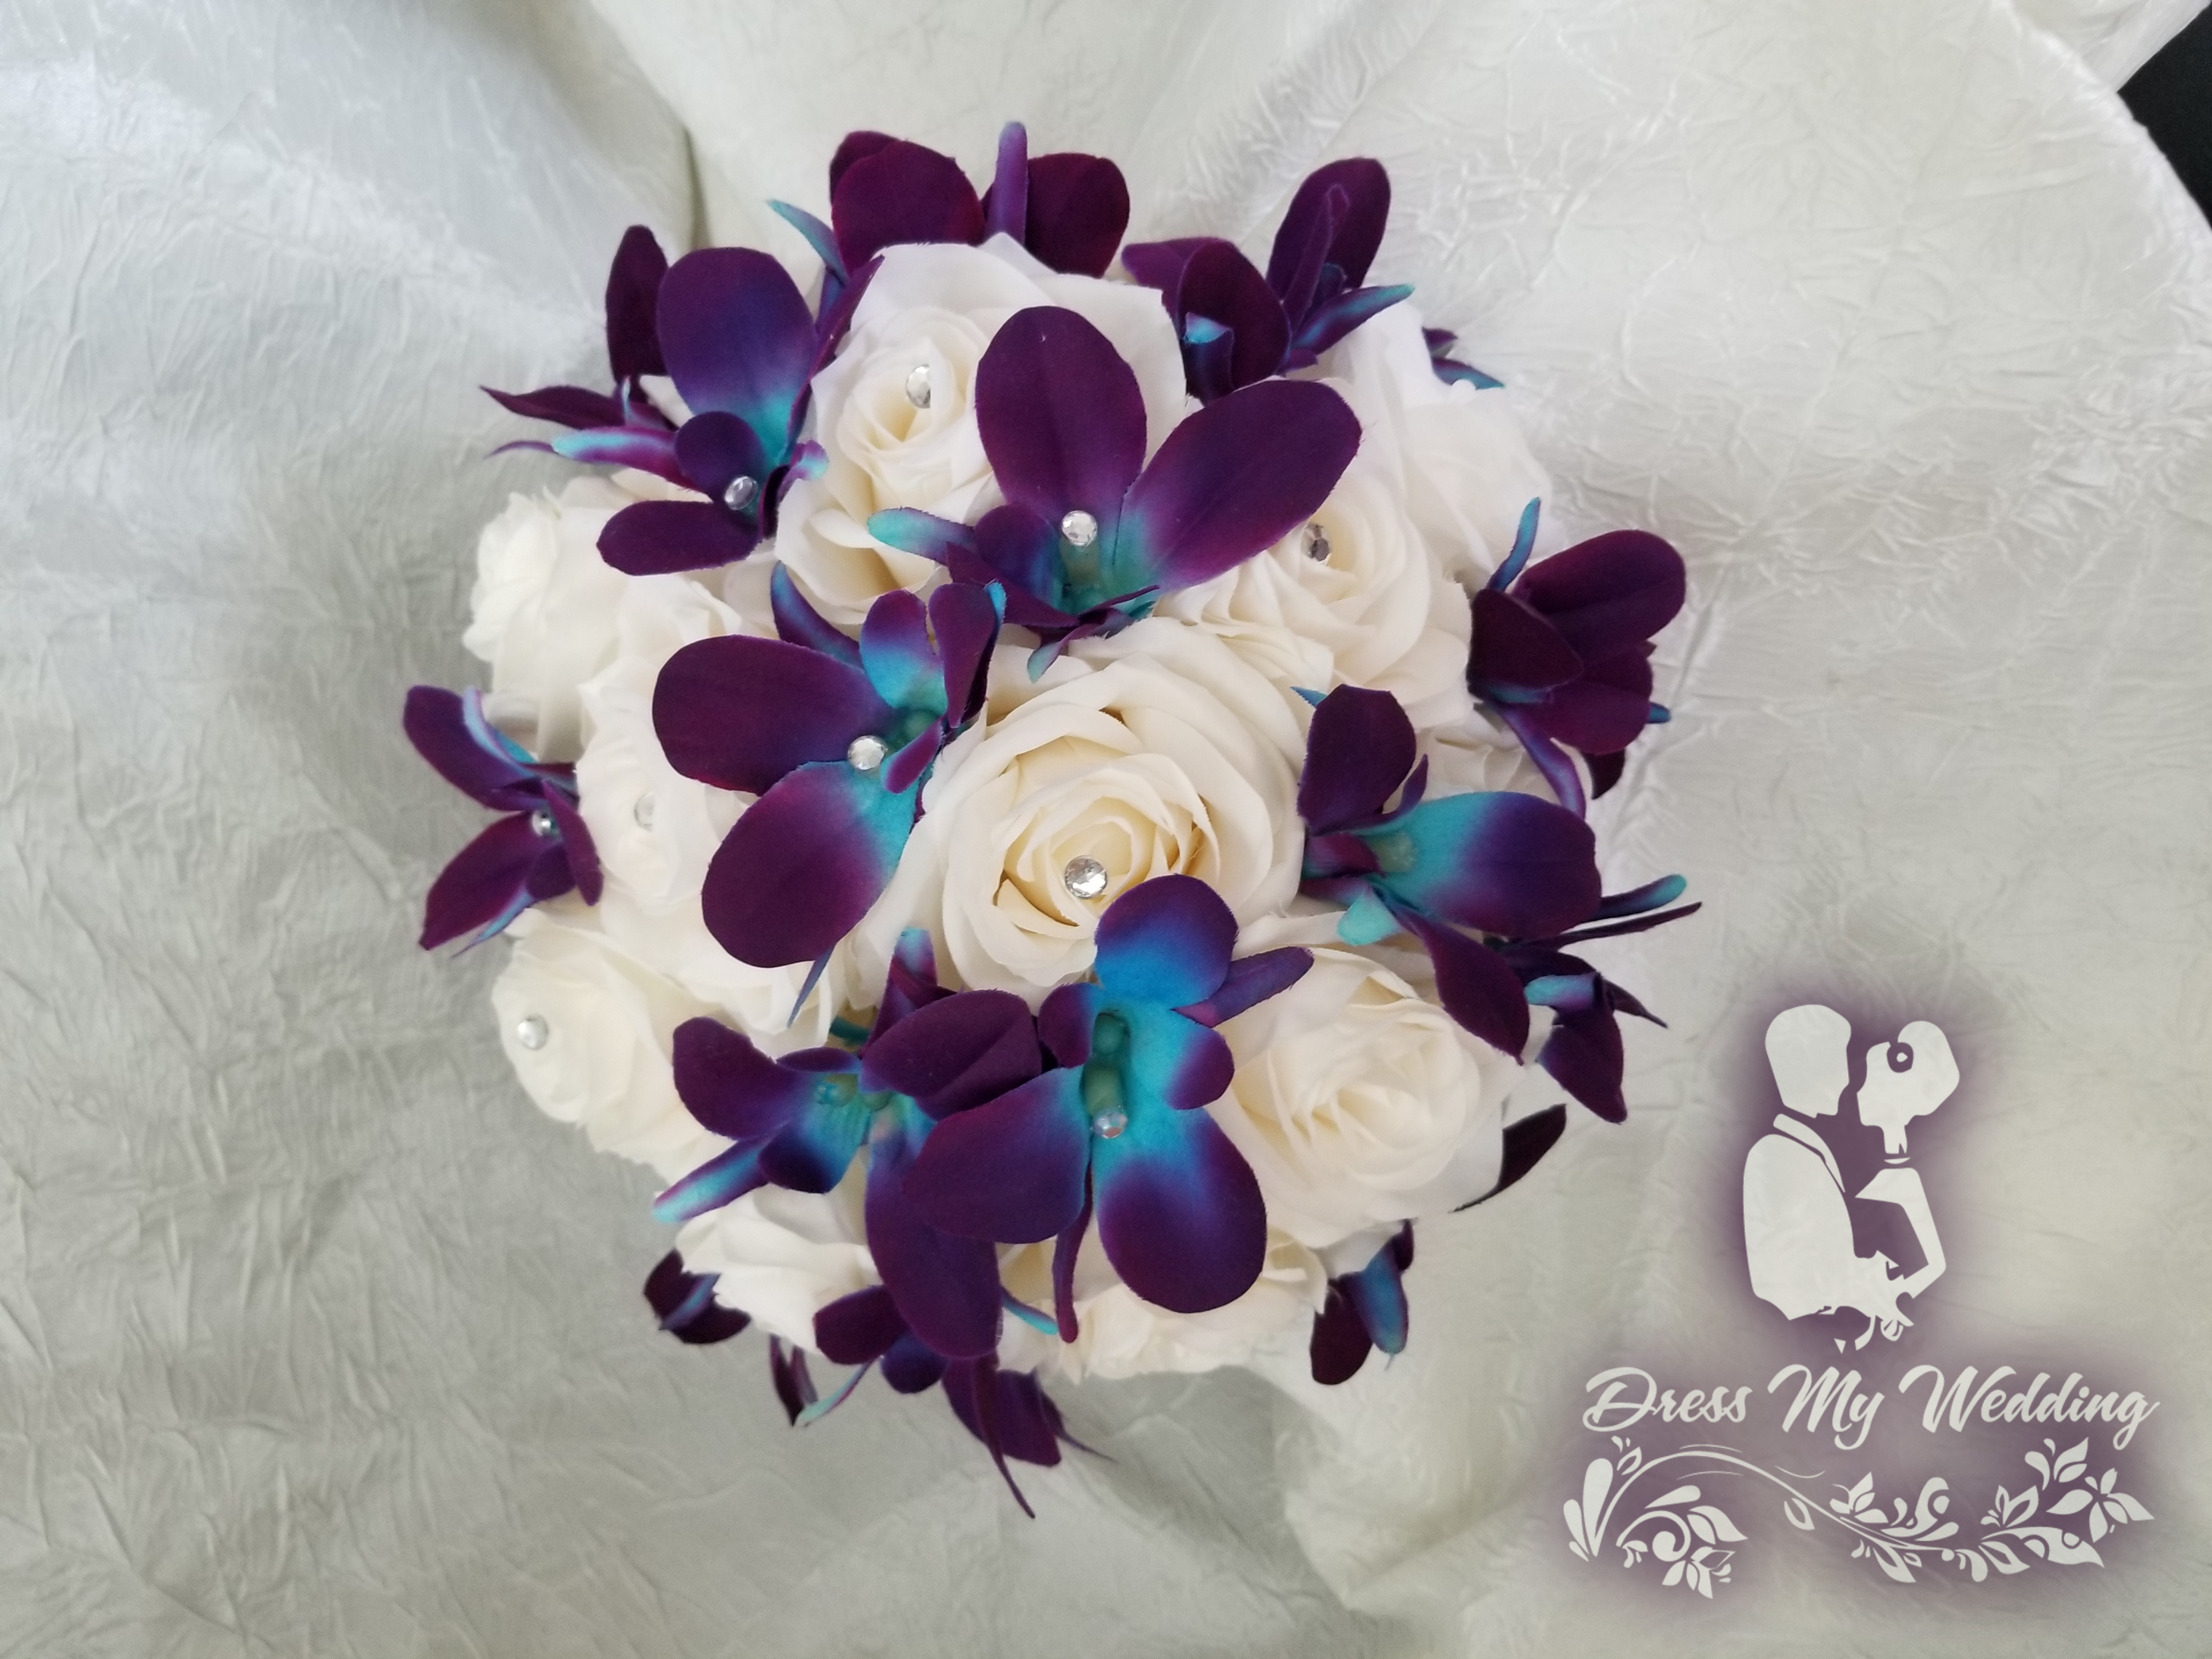 Details about   Wedding Flowers Bouquet Buttonholes Brides Shower Bridesmaids Posy Orchid & Rose 